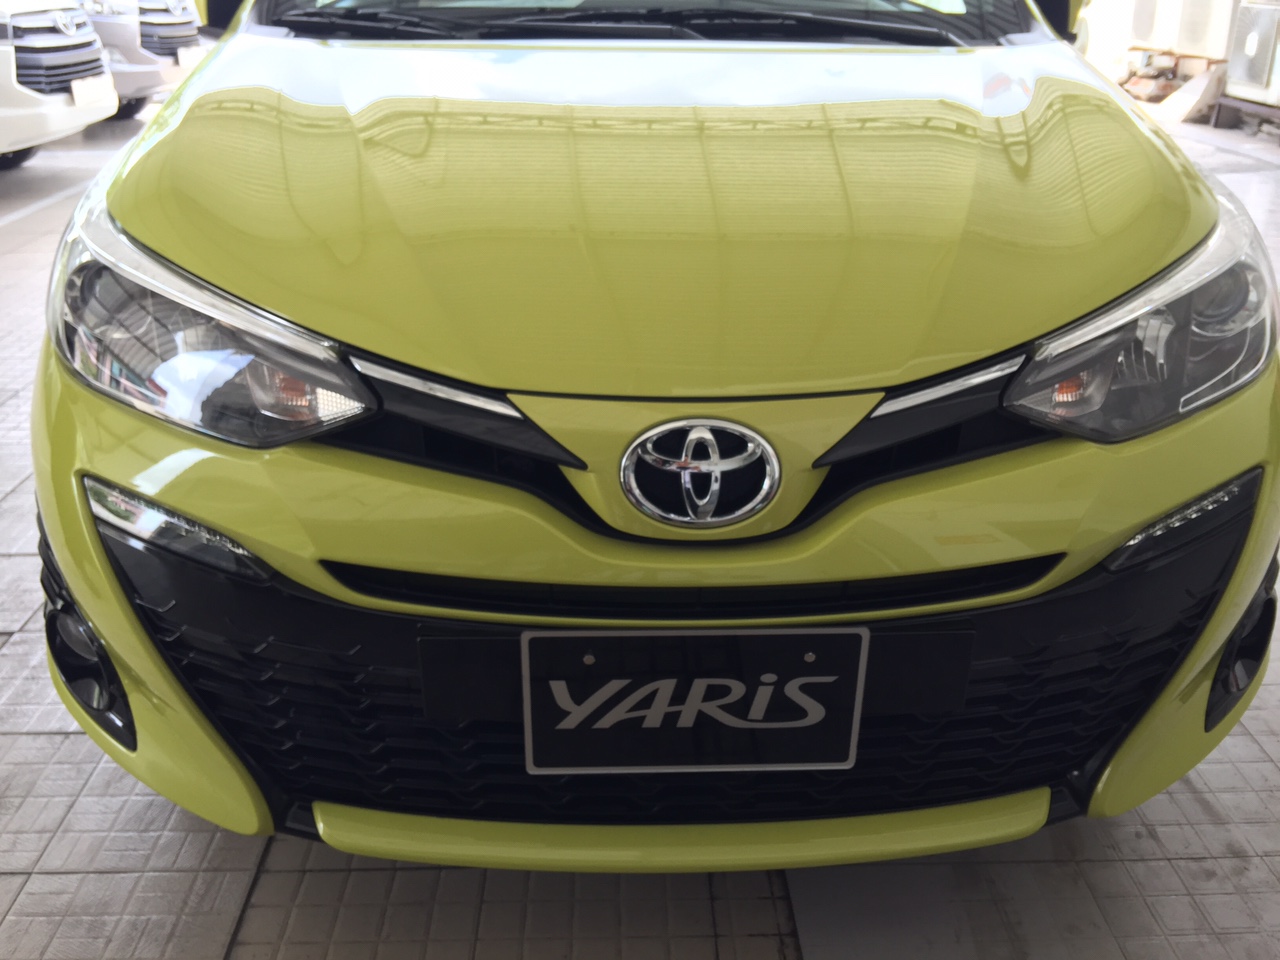 Toyota Yaris 2018 có giá 650 triệu đồng.